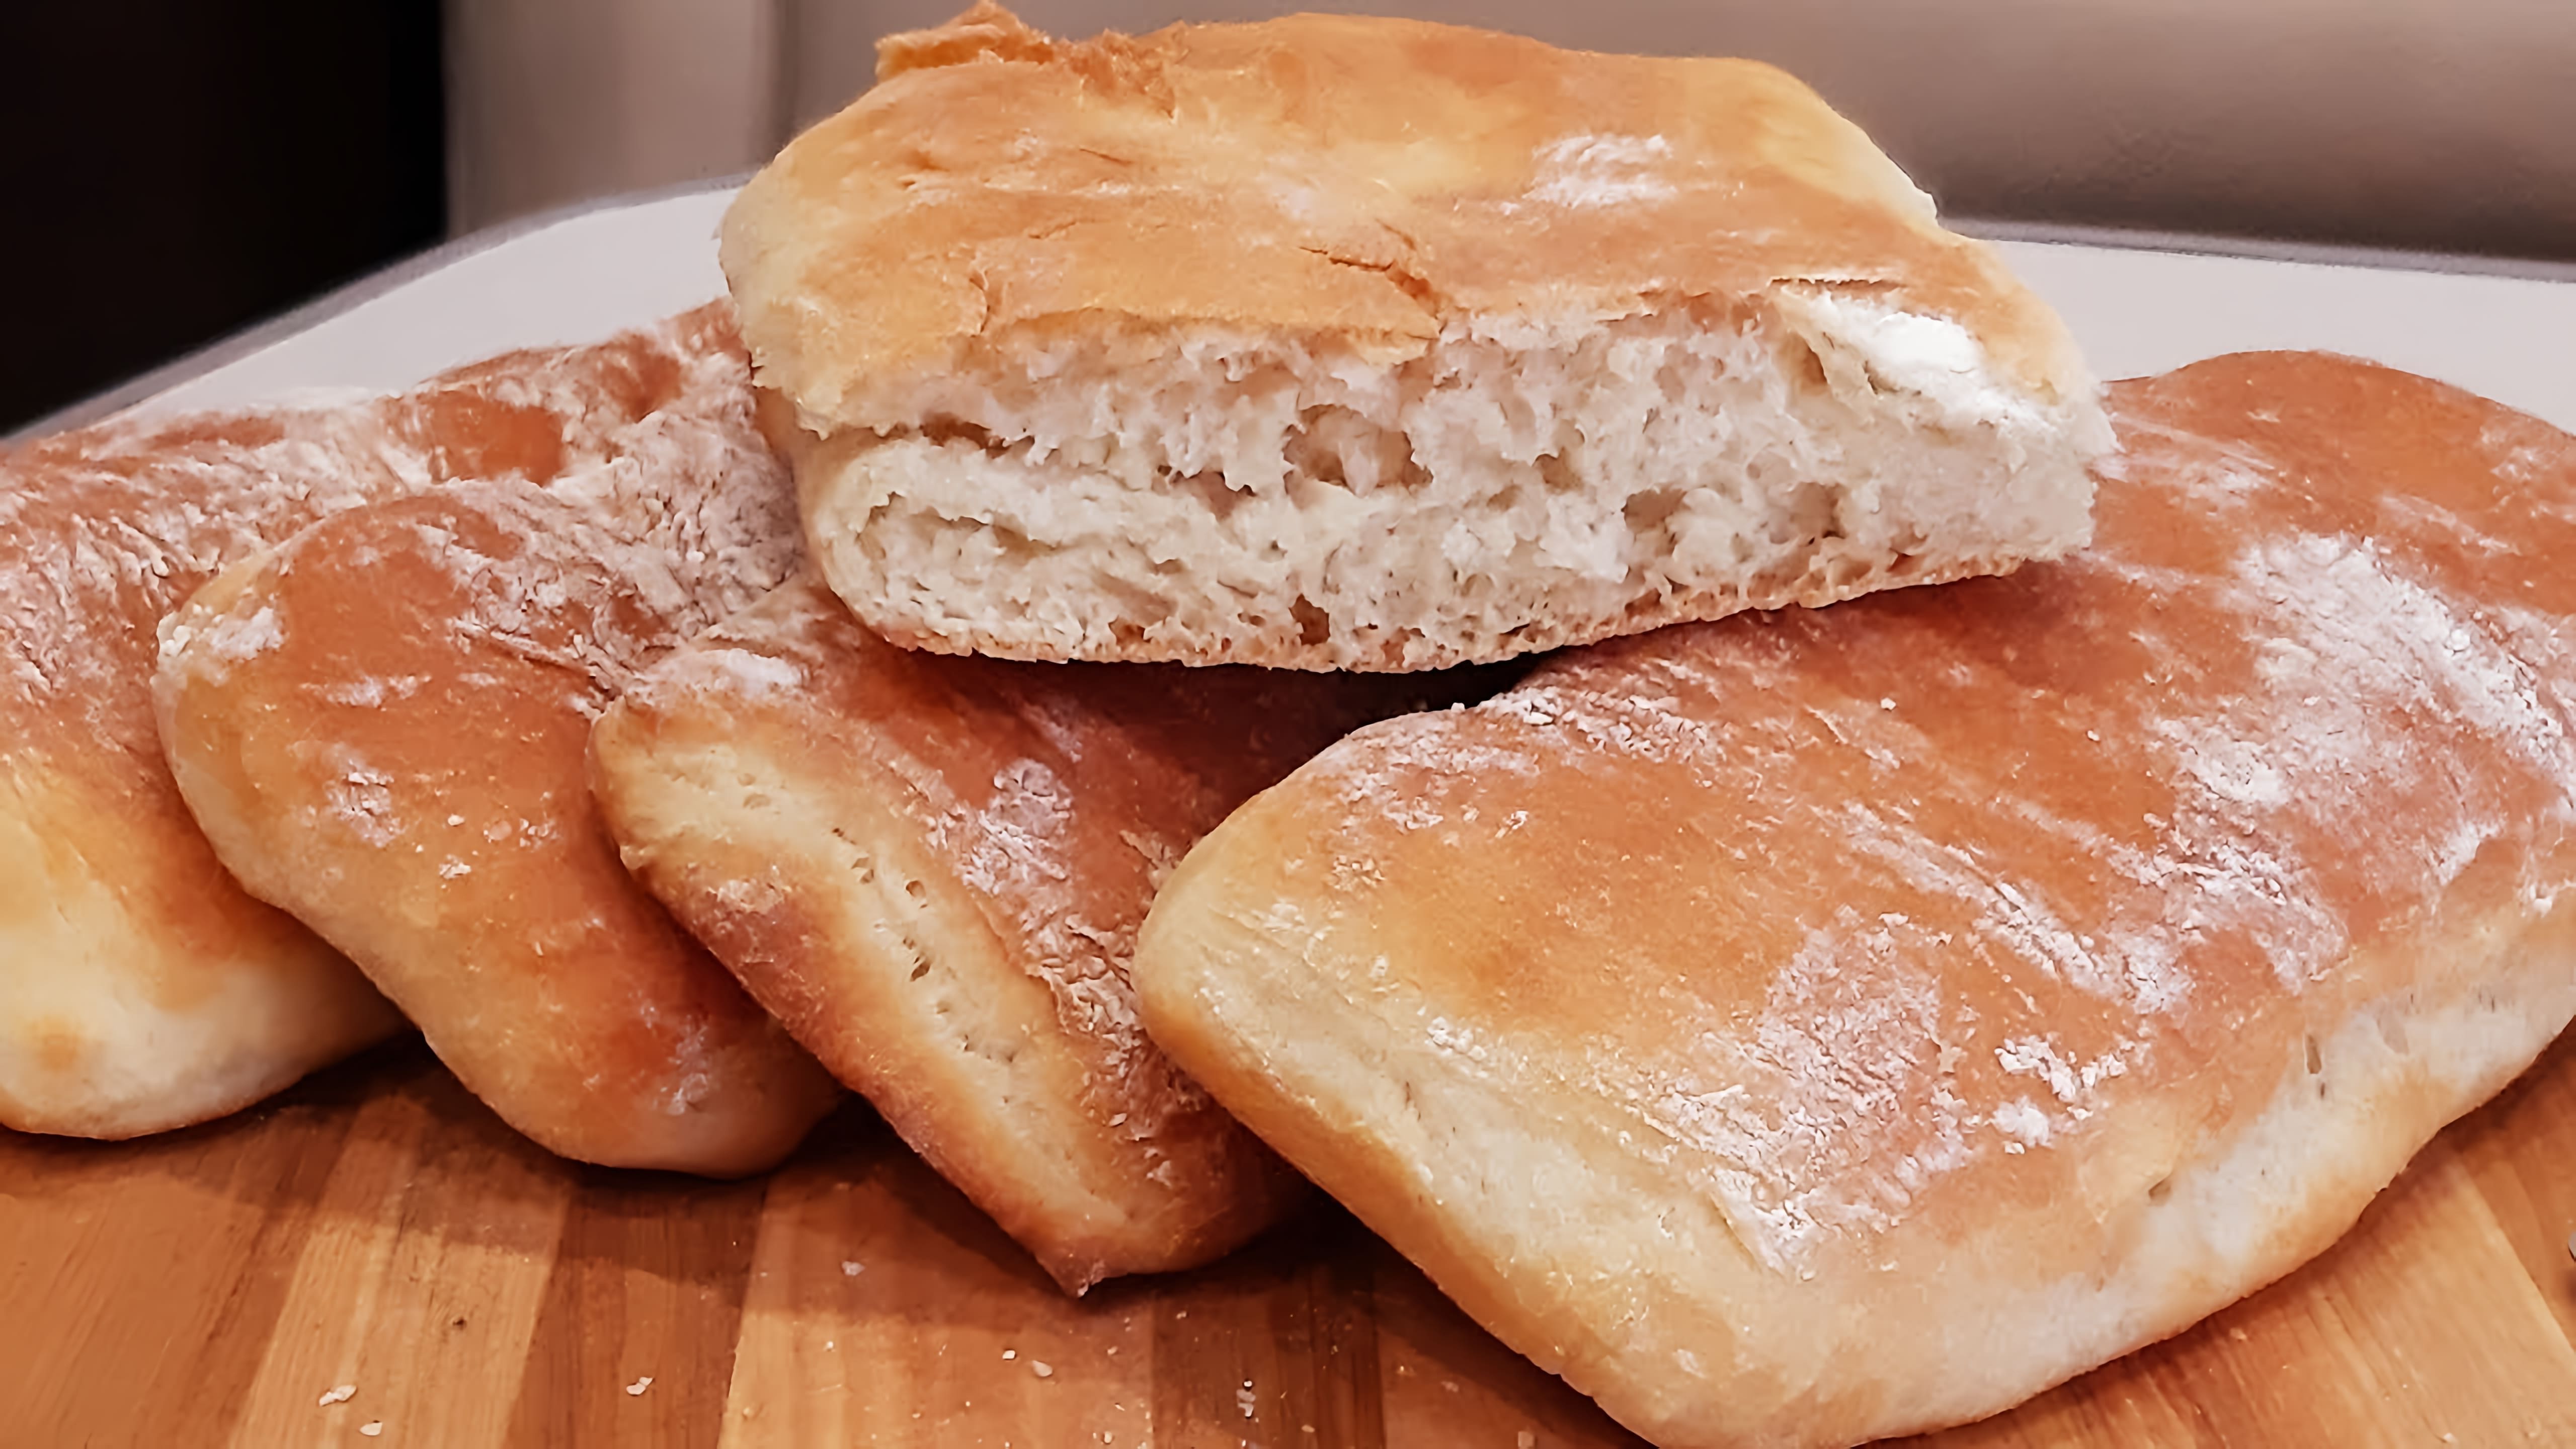 В этом видео демонстрируется процесс приготовления ароматных и воздушных хлебных булочек, которые идеально подходят для приготовления хрустящих панини